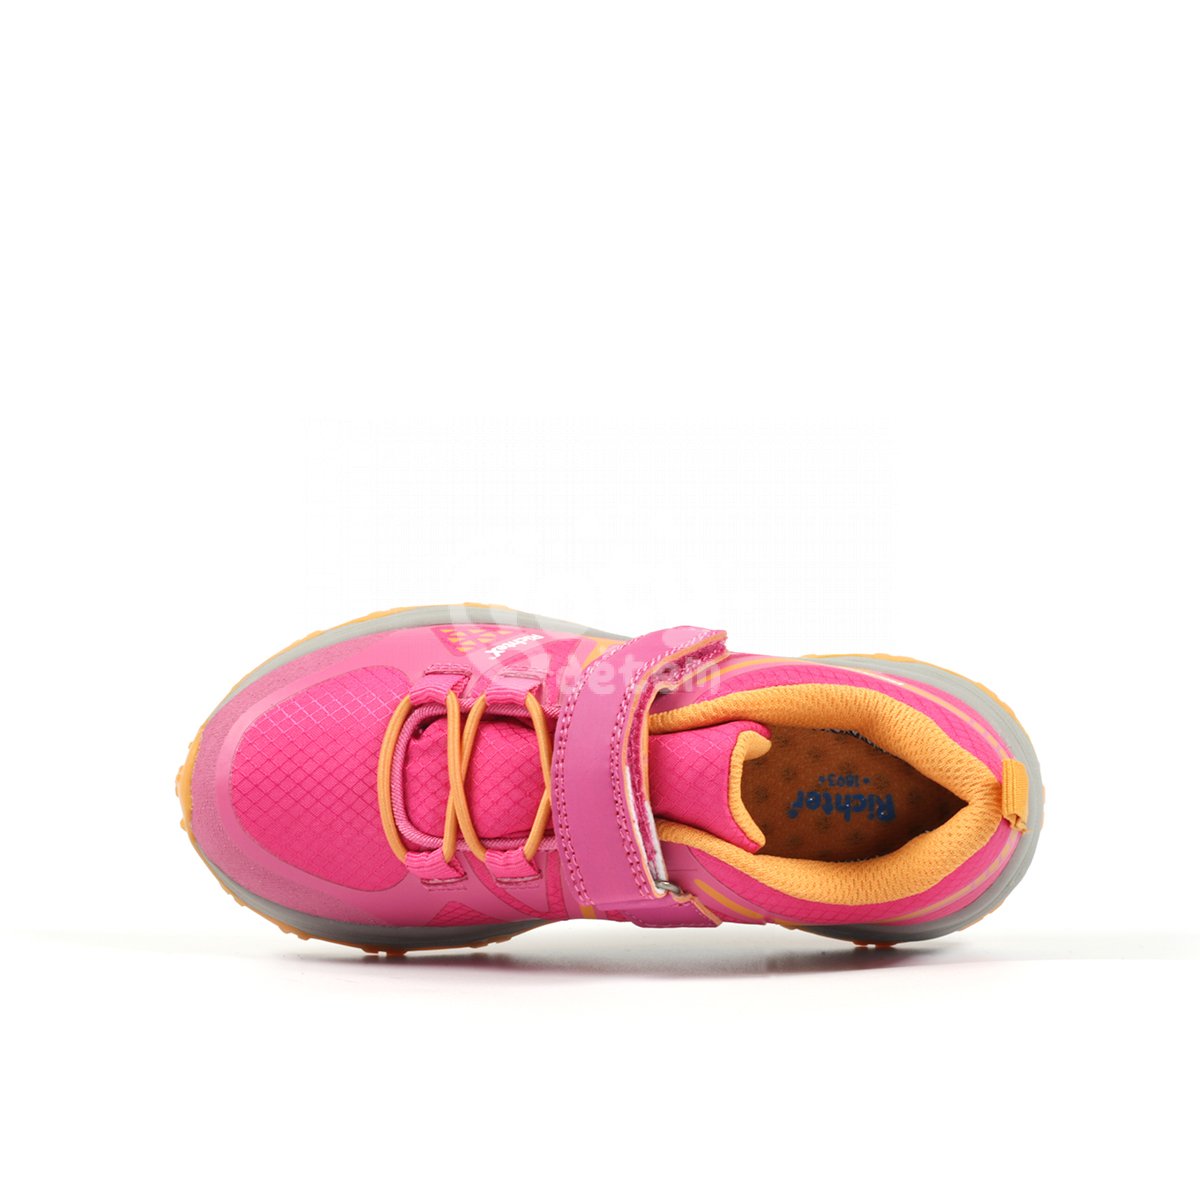 Sportovní obuv TR-3 Richter 7872-5191-3501 růžová